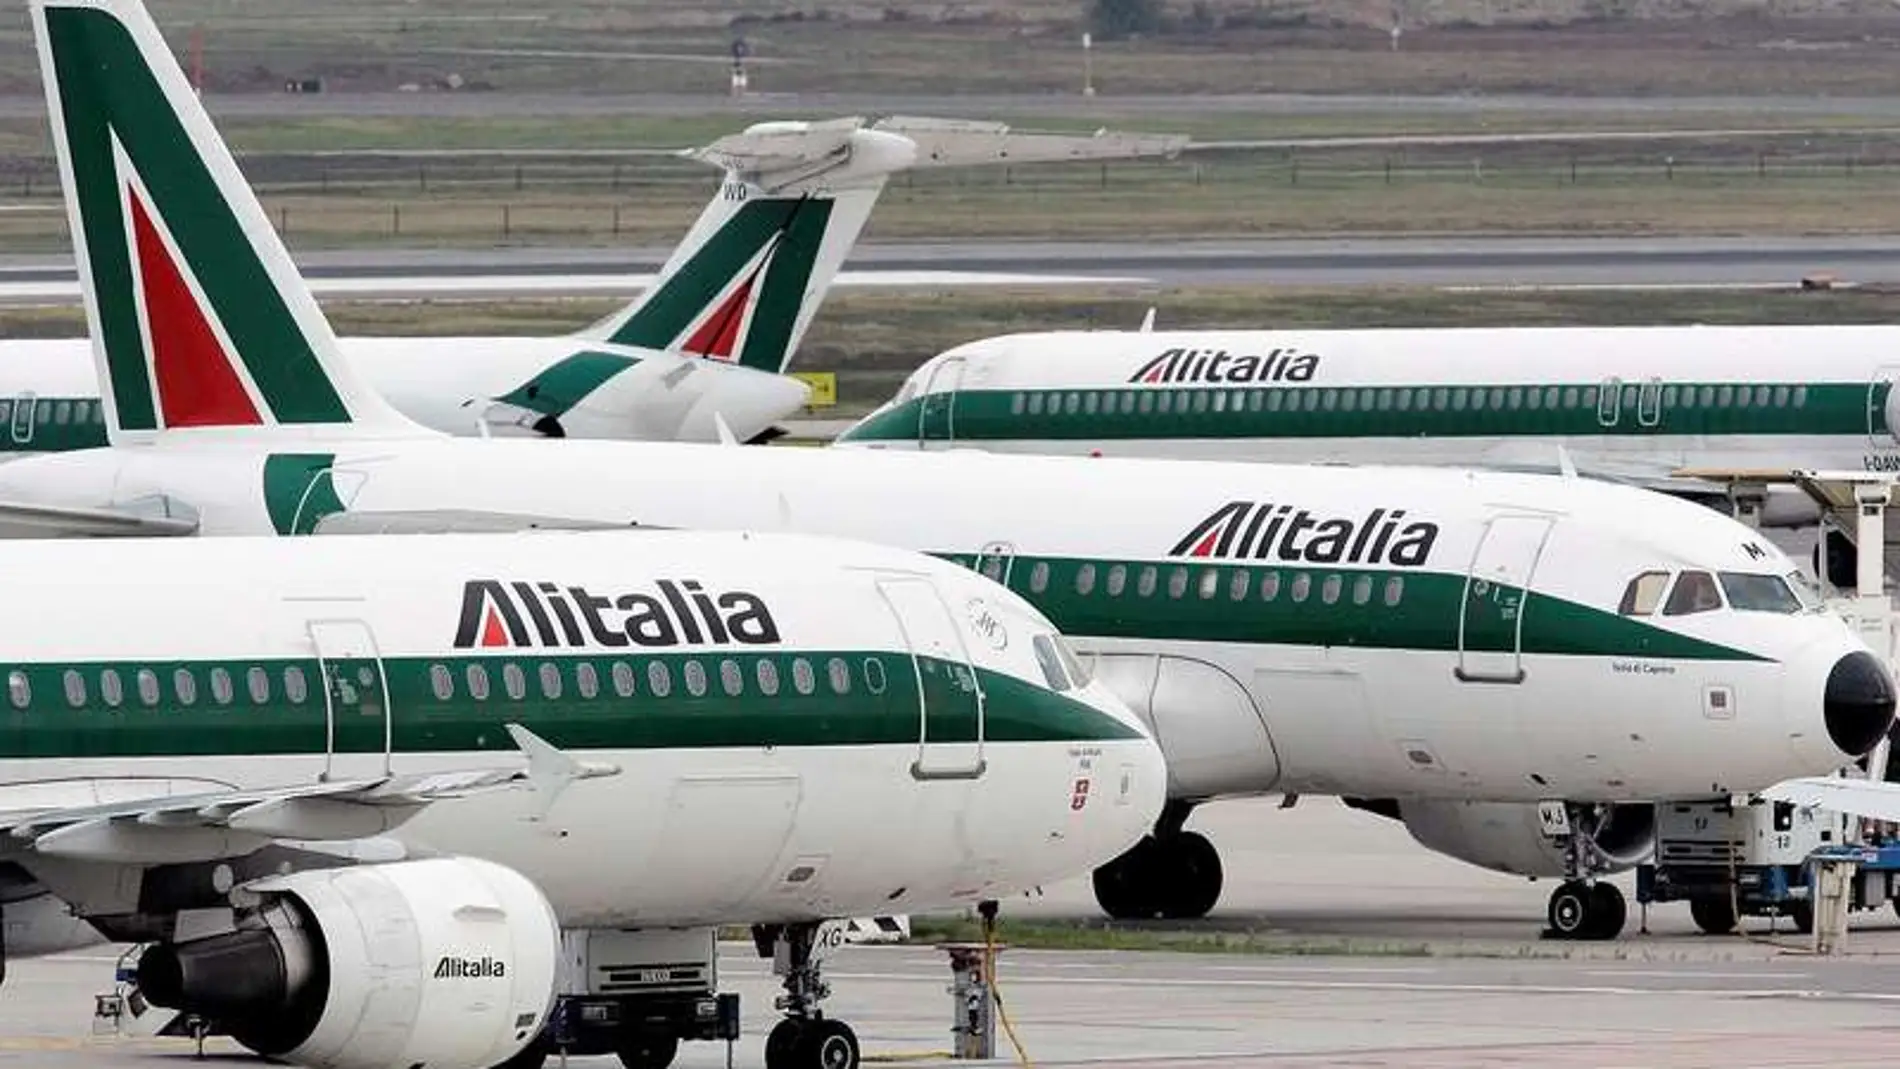 La situación de Alitalia empeoró por la pandemia que hizo que los vuelos se quedaran en tierra en todo el mundo durante meses